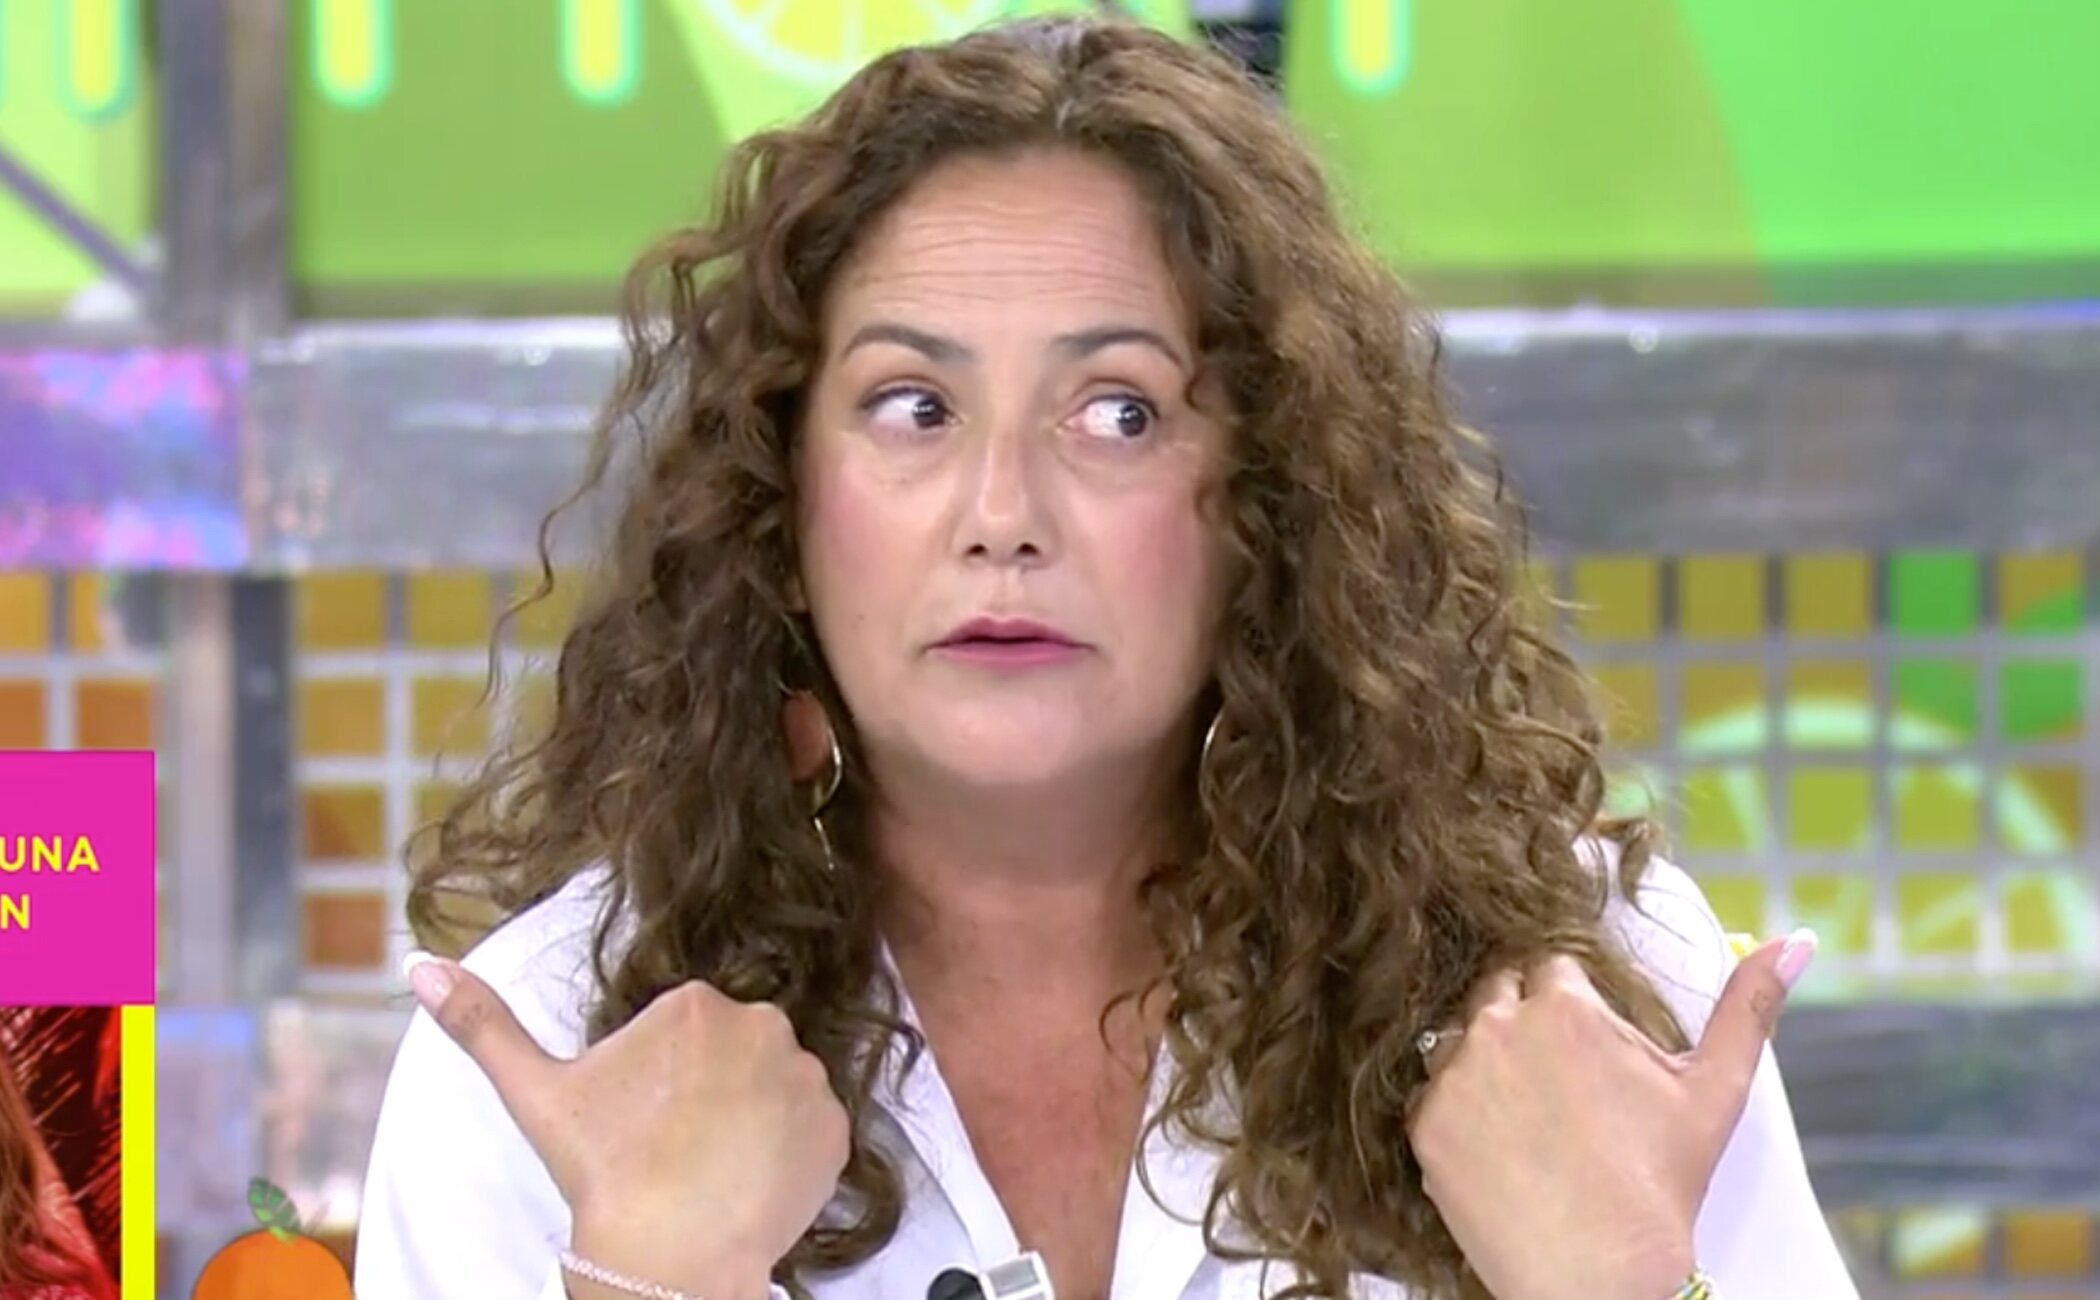 Rocío Cortés insinúa que Alma Bollo no es hija de Chiquetete: "Hacedme la prueba de paternidad, yo me la hago"